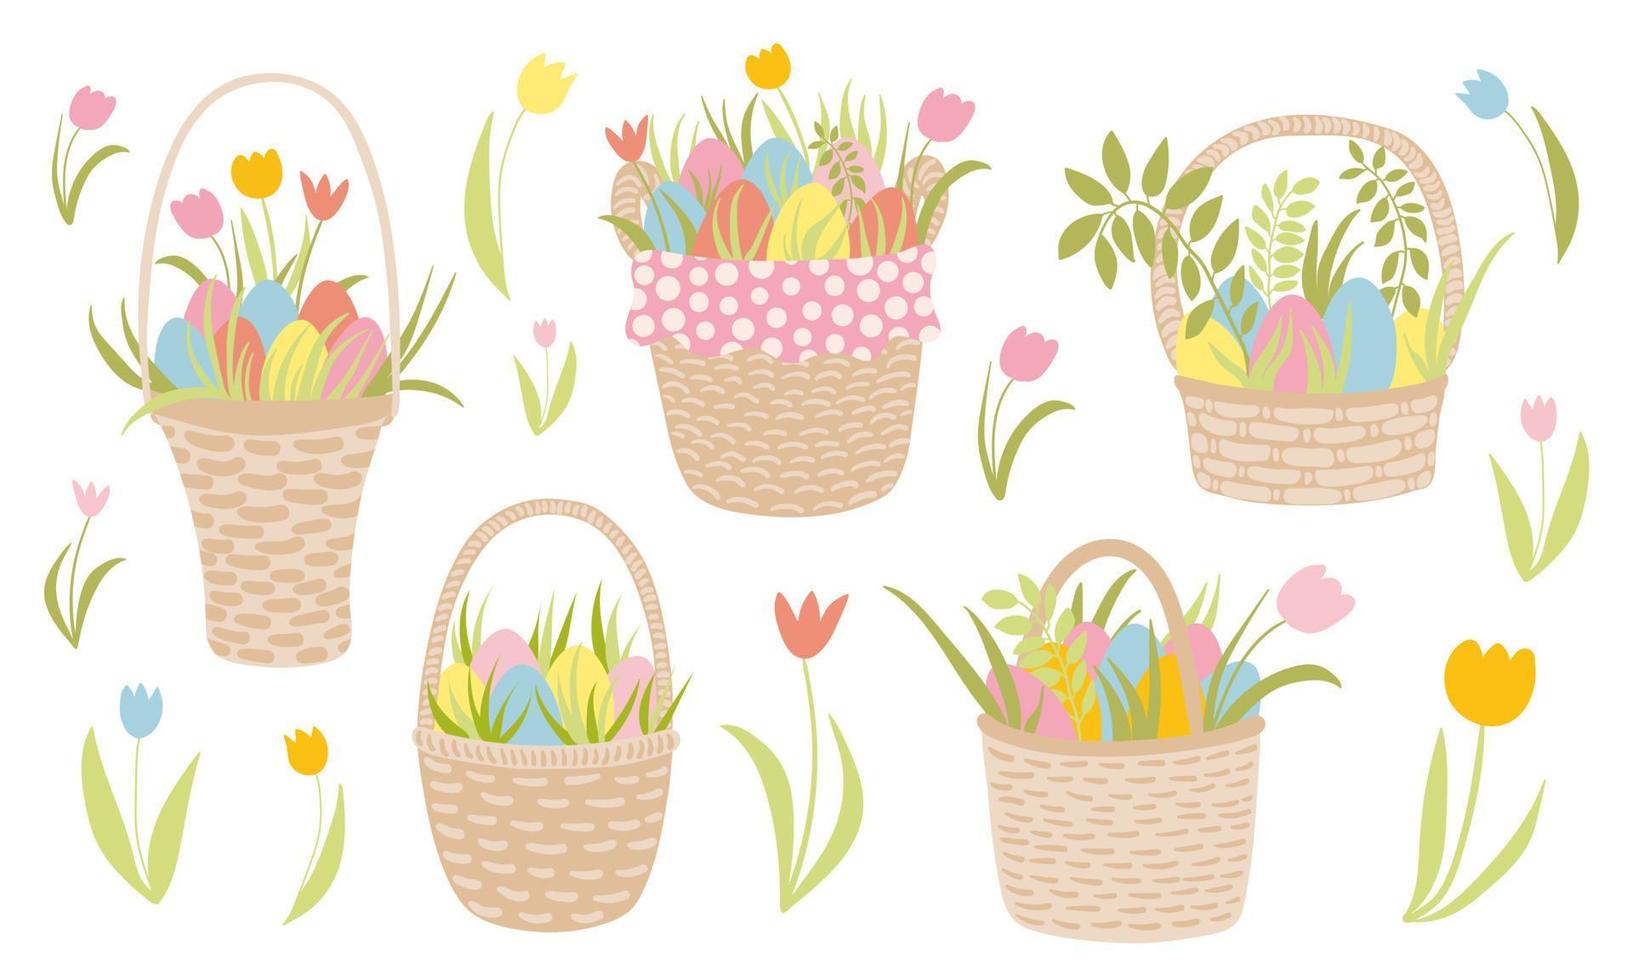 Pascua de Resurrección mimbre cestas colocar. mano dibujado vector cestas con huevos y flores linda tulipanes, flores, césped. diseño para pegatinas, Pascua de Resurrección fiesta decoración, invitaciones, saludo tarjetas